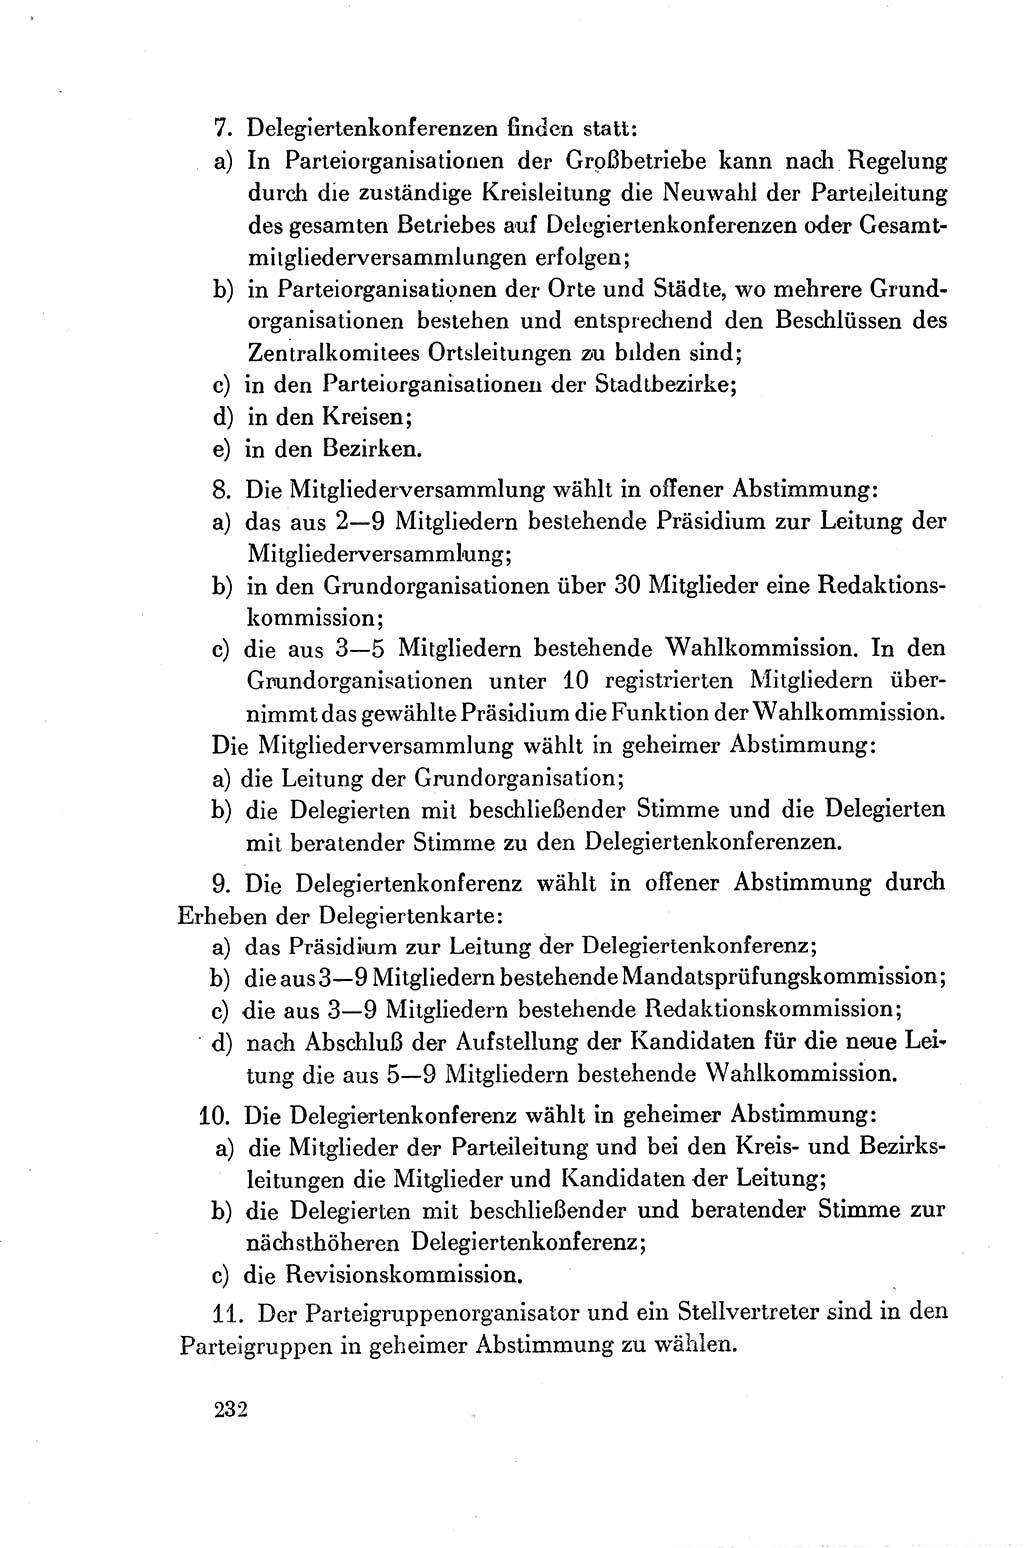 Dokumente der Sozialistischen Einheitspartei Deutschlands (SED) [Deutsche Demokratische Republik (DDR)] 1954-1955, Seite 232 (Dok. SED DDR 1954-1955, S. 232)